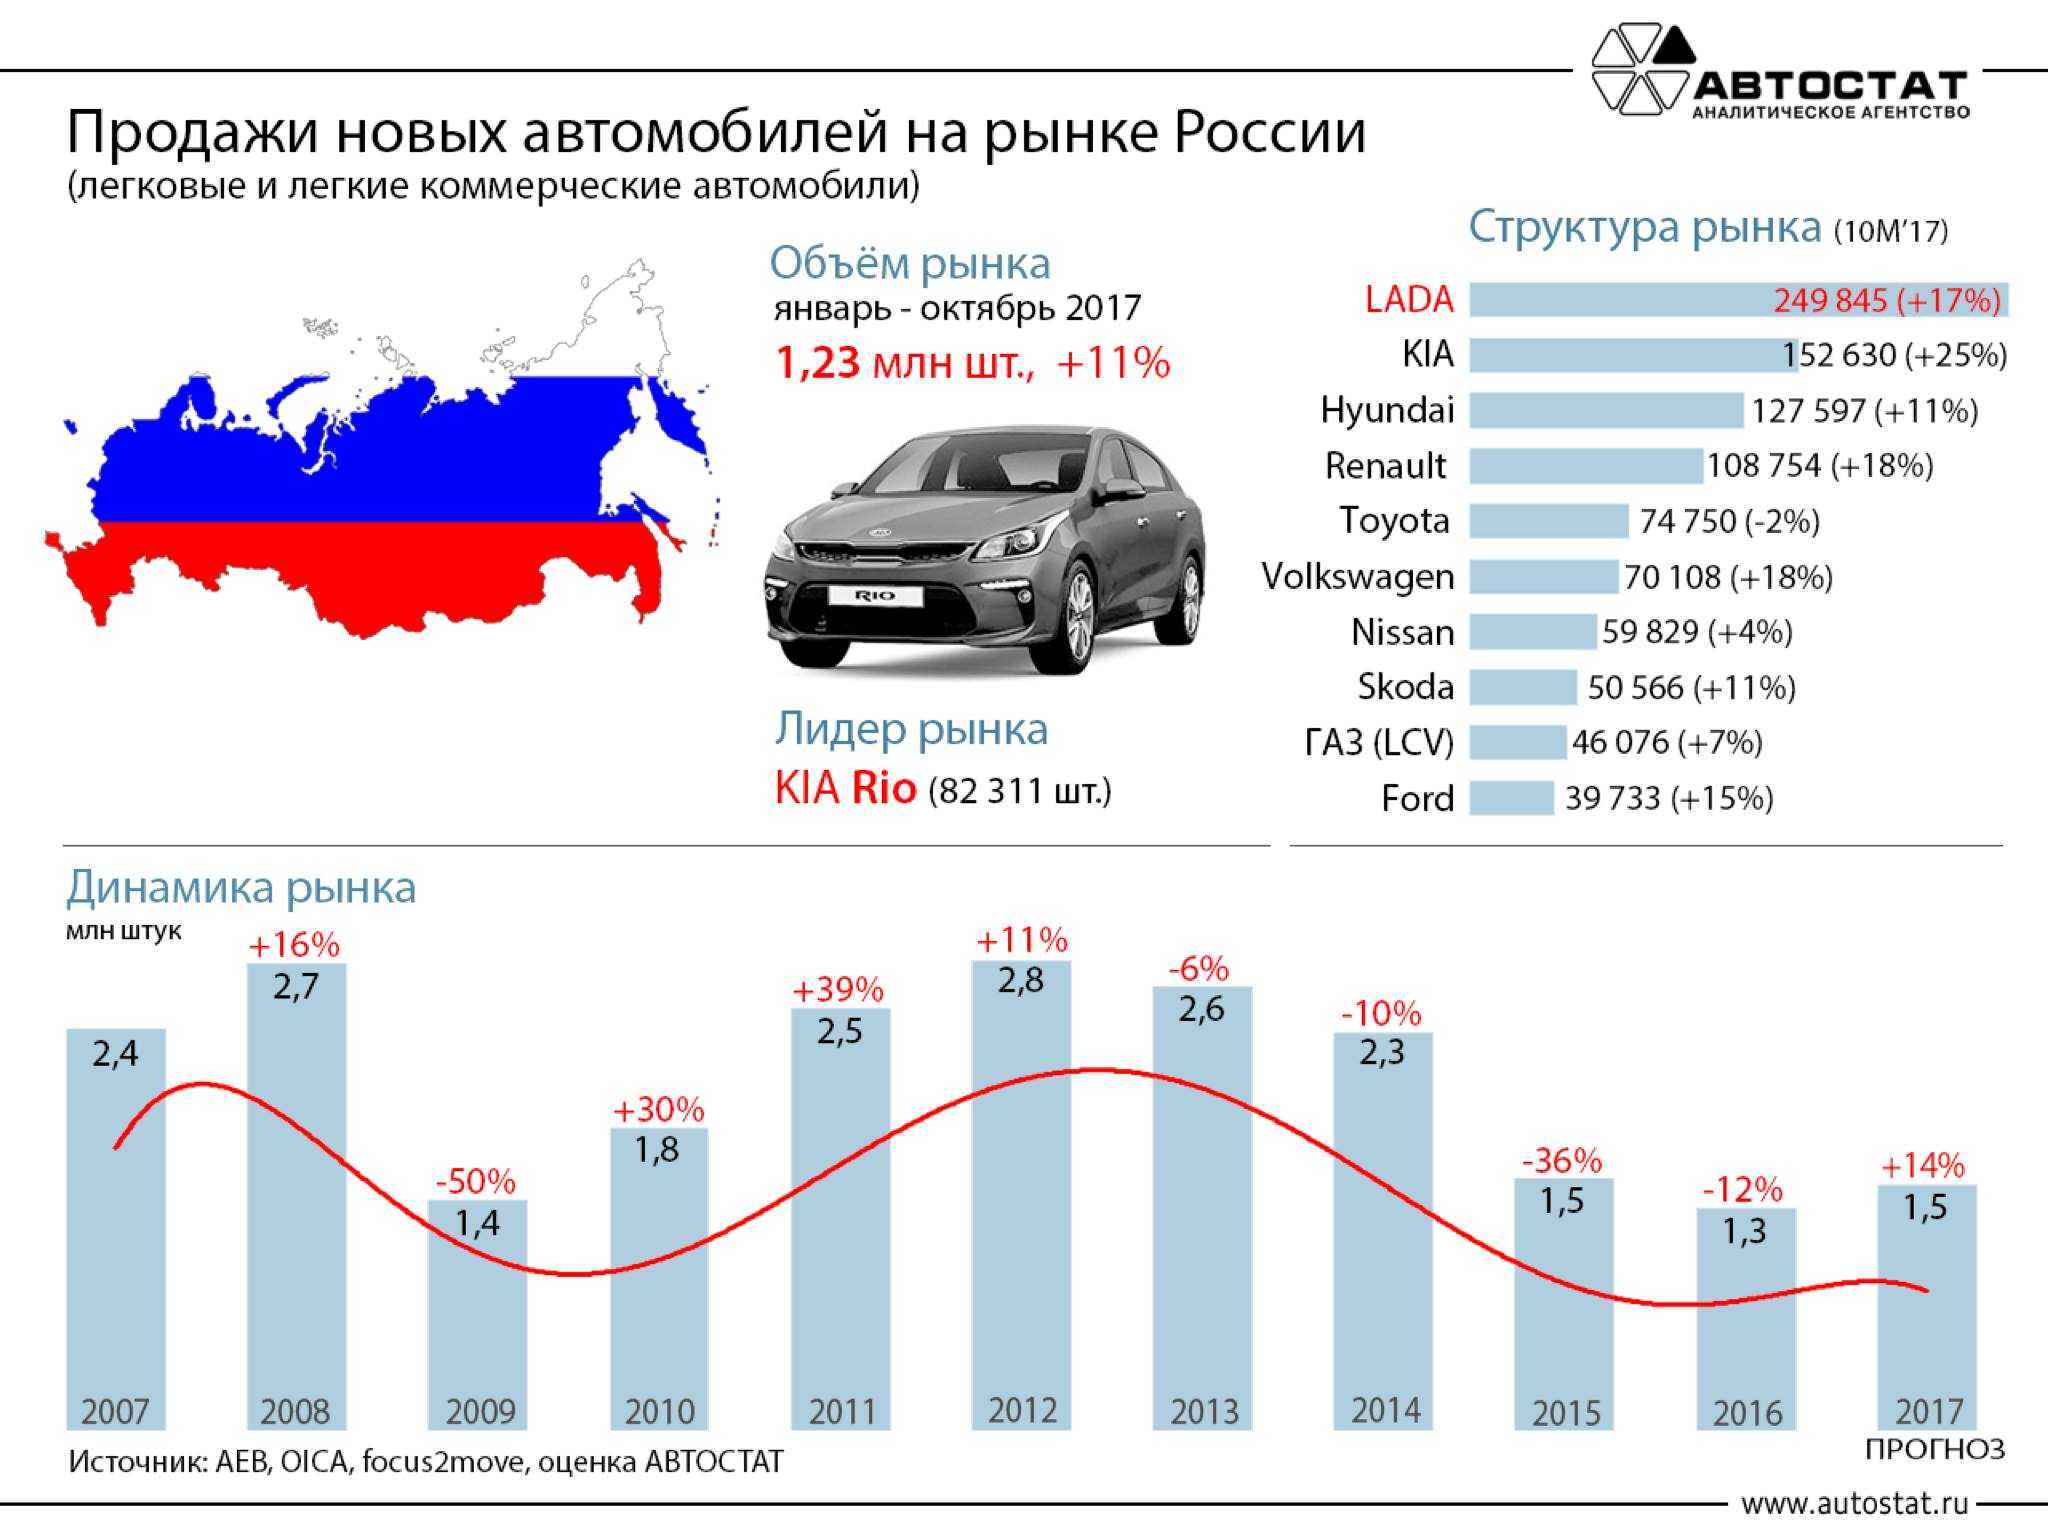 Иностранное авто в россии